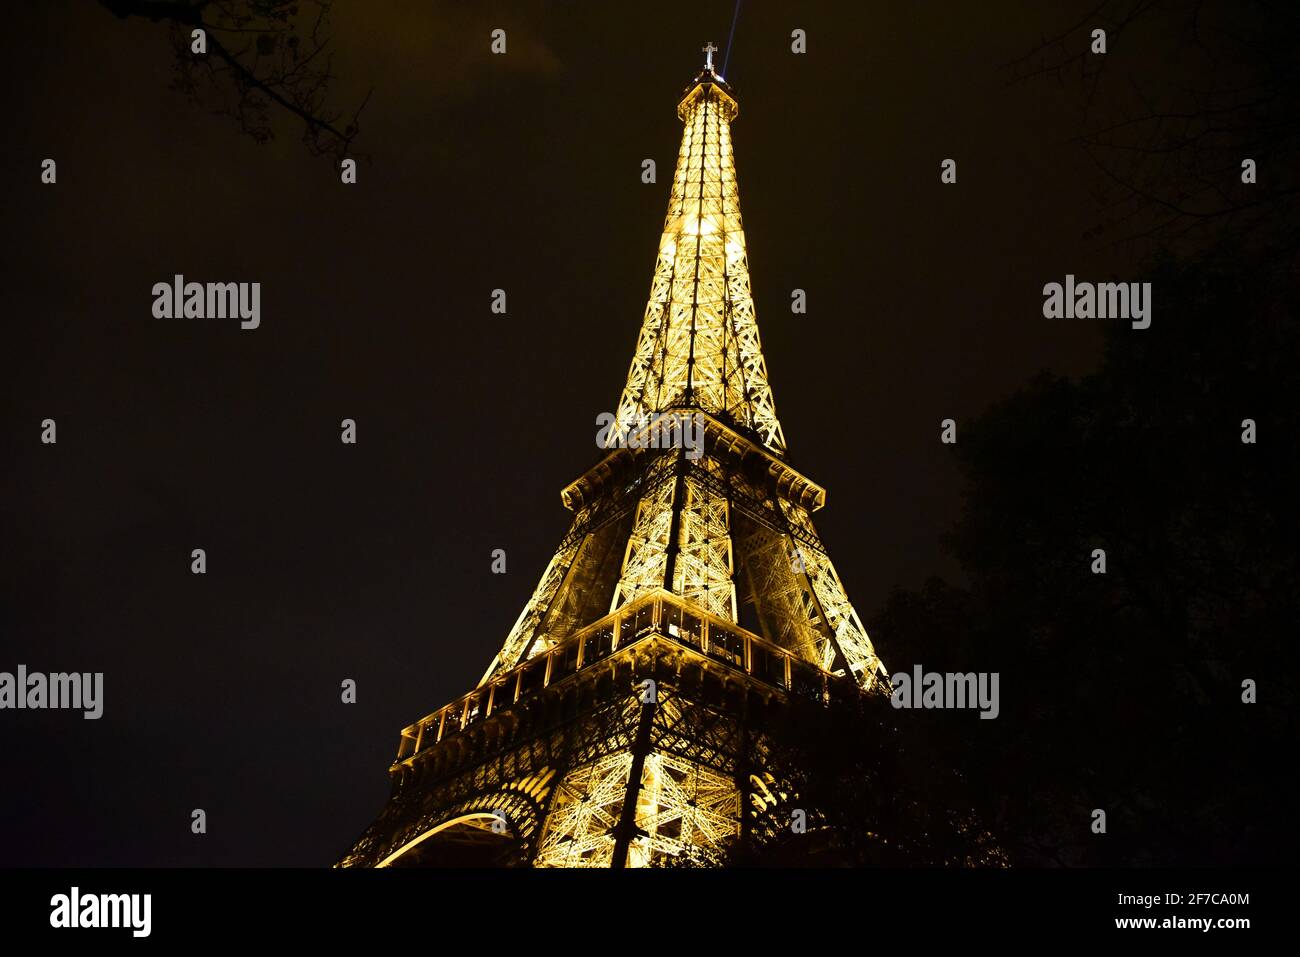 La tour Eiffel, Eiffel Tower, Paris, France Stock Photo